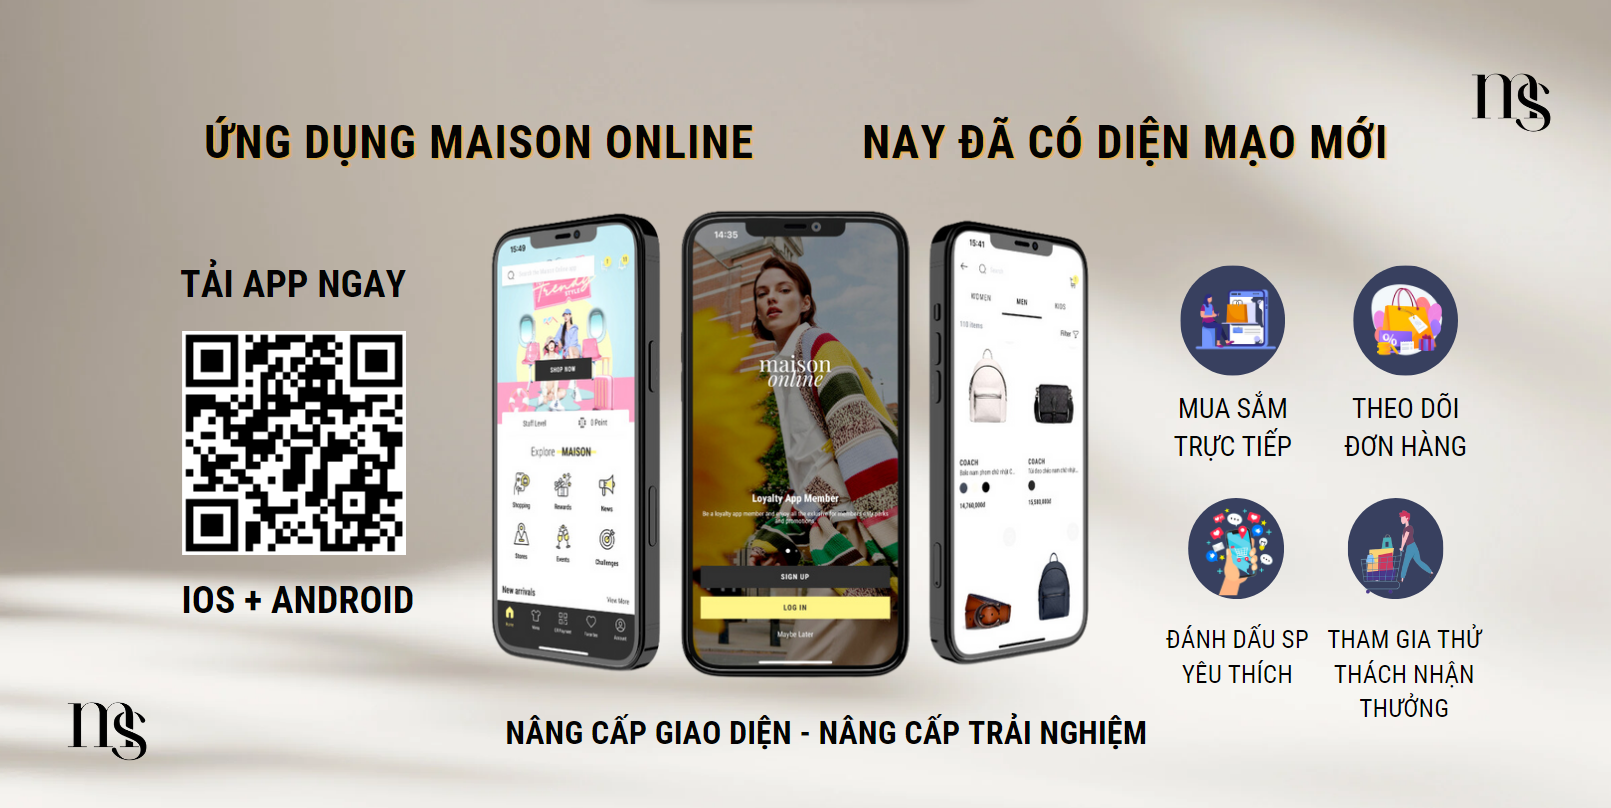 App Maison Online